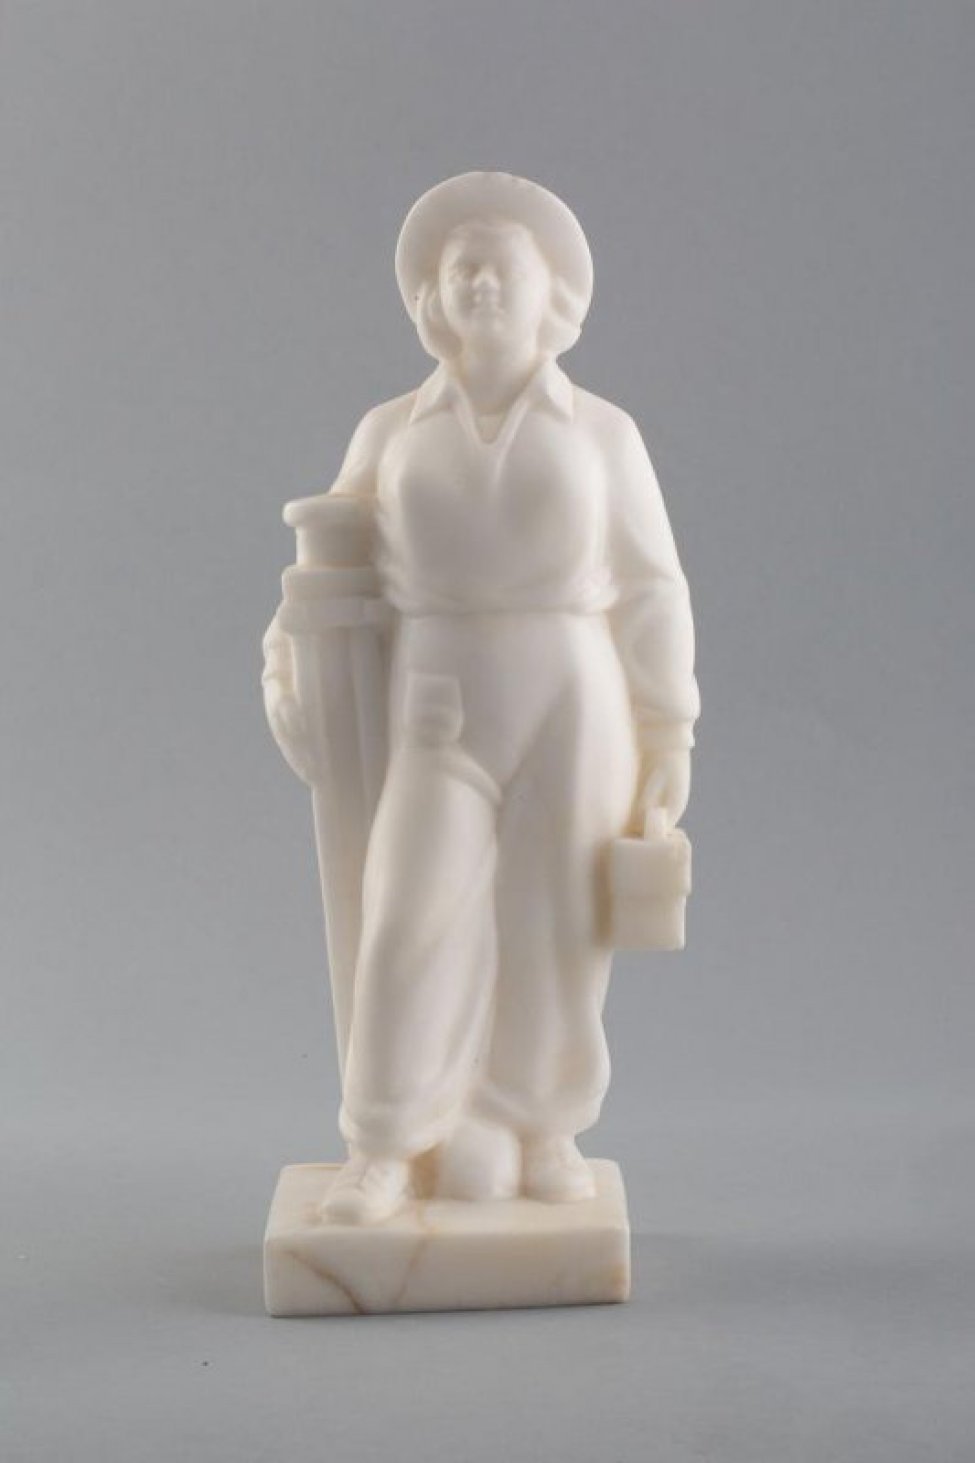 Из белого камня. Изображена женщина в комбинезоне, шляпе, с выставленной вперед ногой. Правой рукой она придерживает штатив, в левой руке держит коробку.